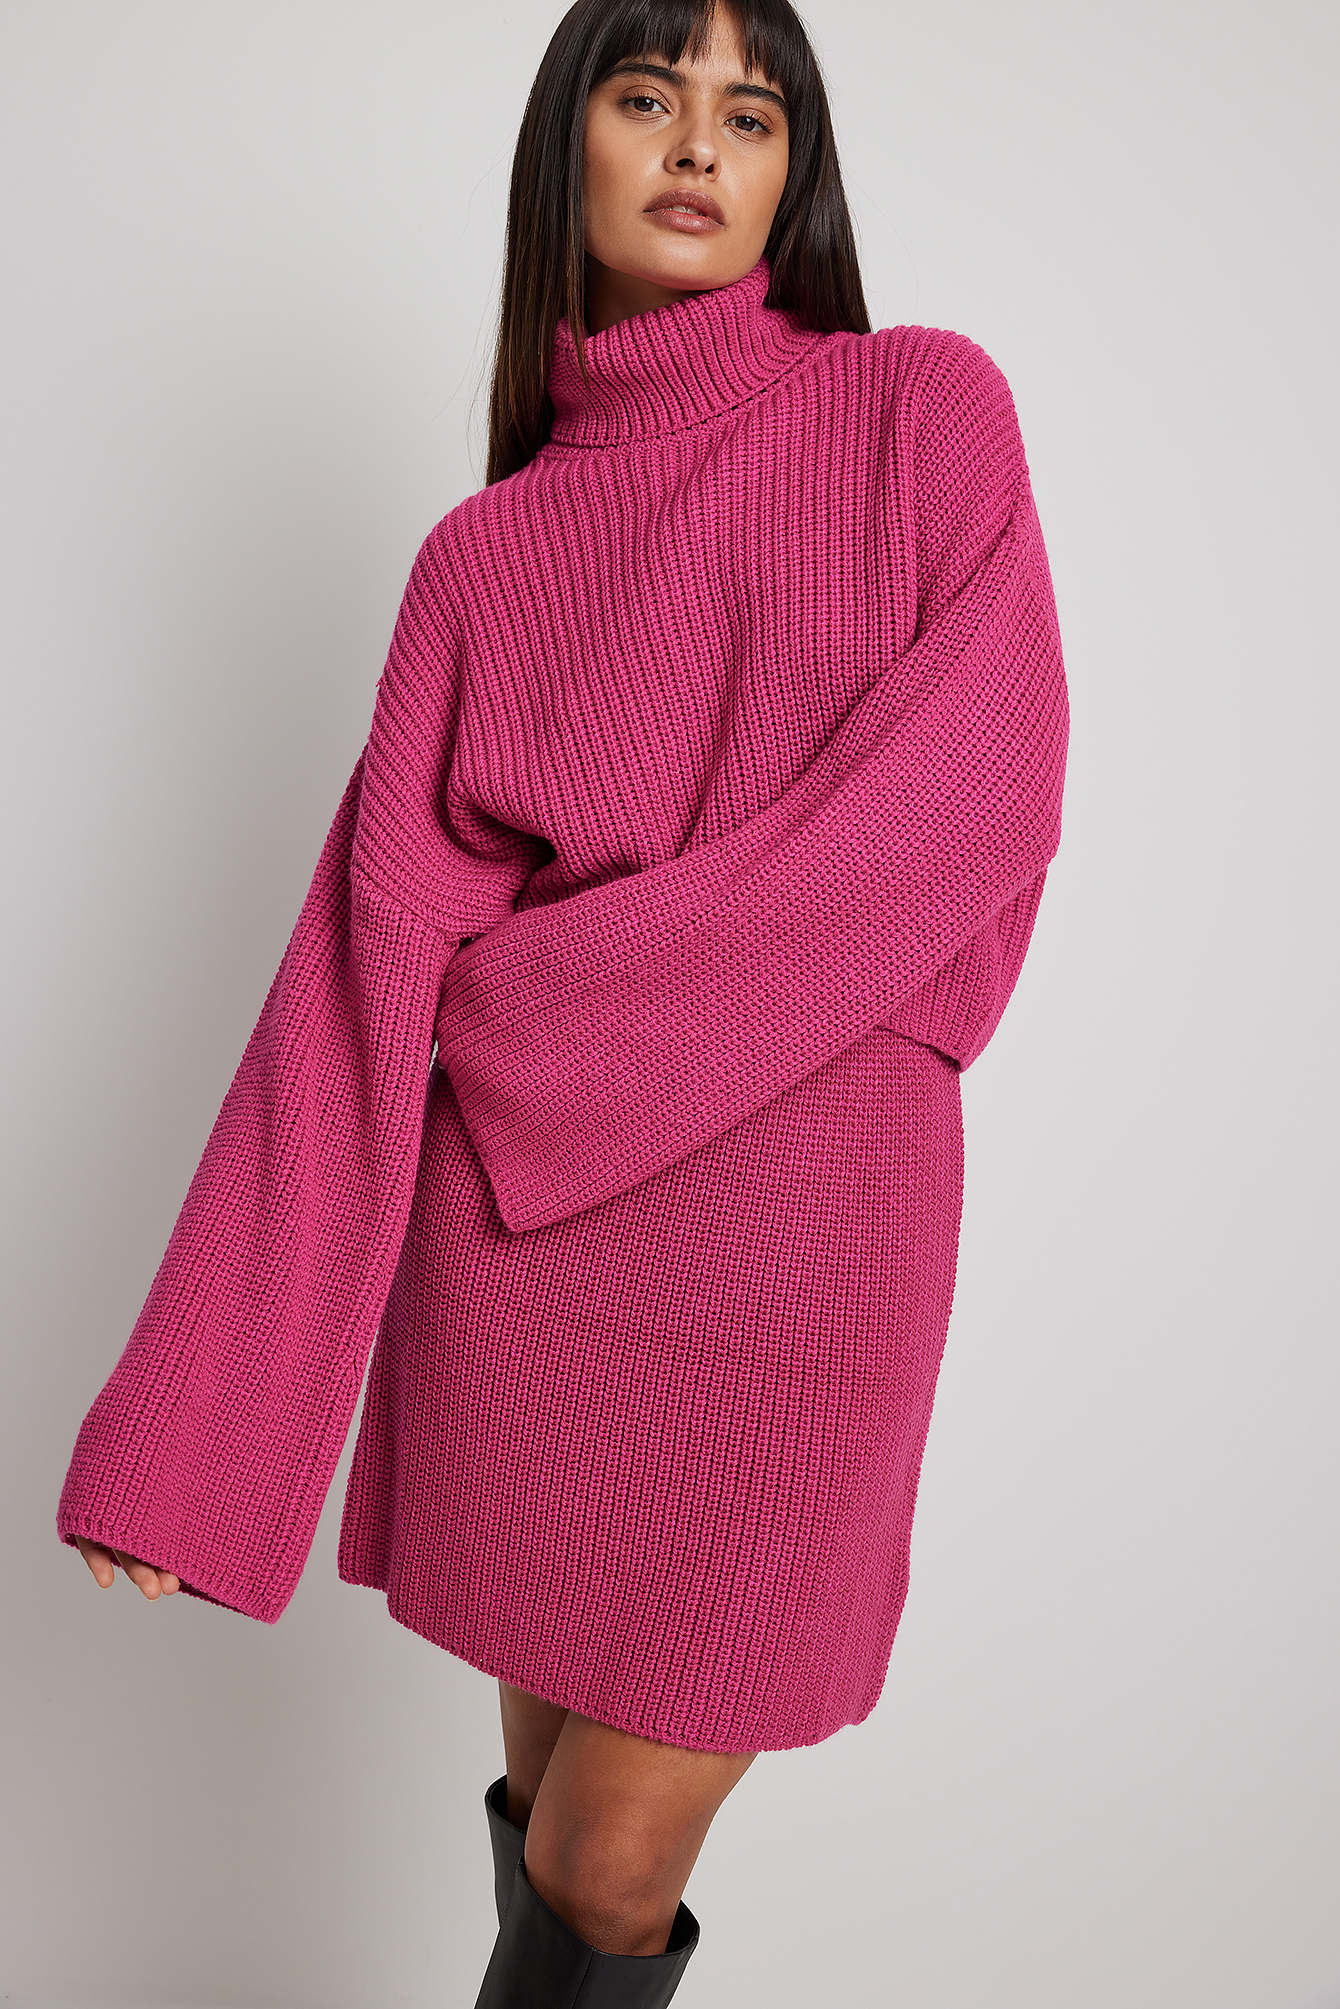 Damen Bekleidung Pullover und Strickwaren Sweatjacken NA-KD Synthetik Gerippter Strickpullover Mit Hohem Ausschnitt in Pink 